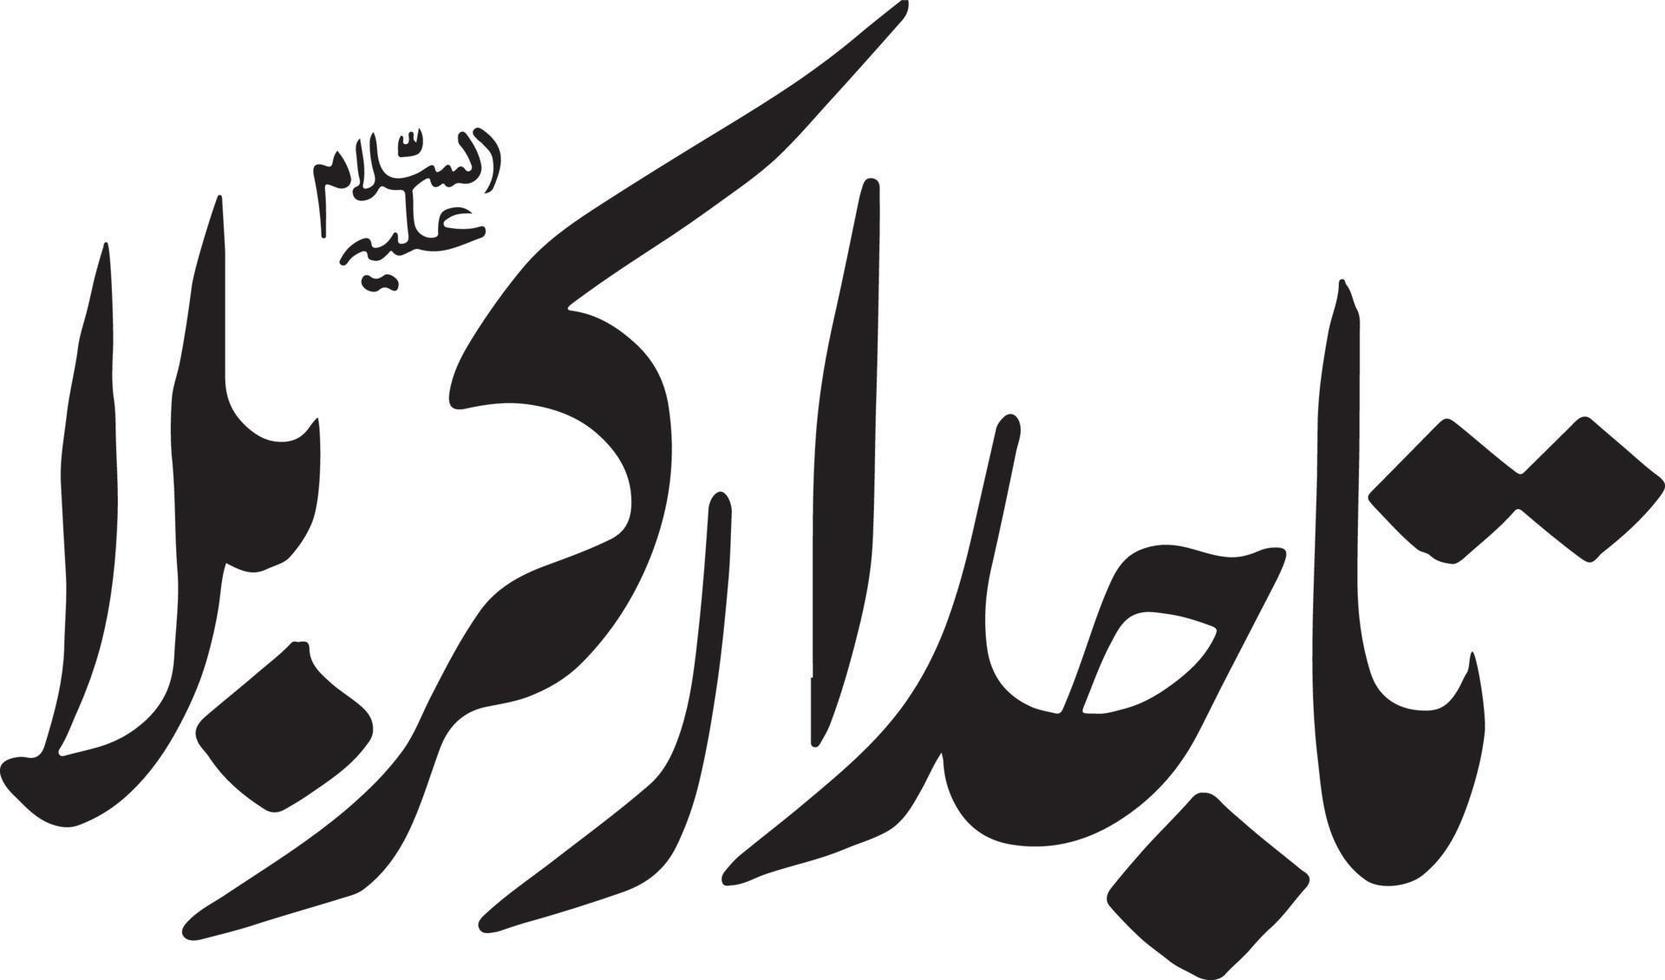 tajdar karbla título islámico urdu árabe caligrafía vector libre